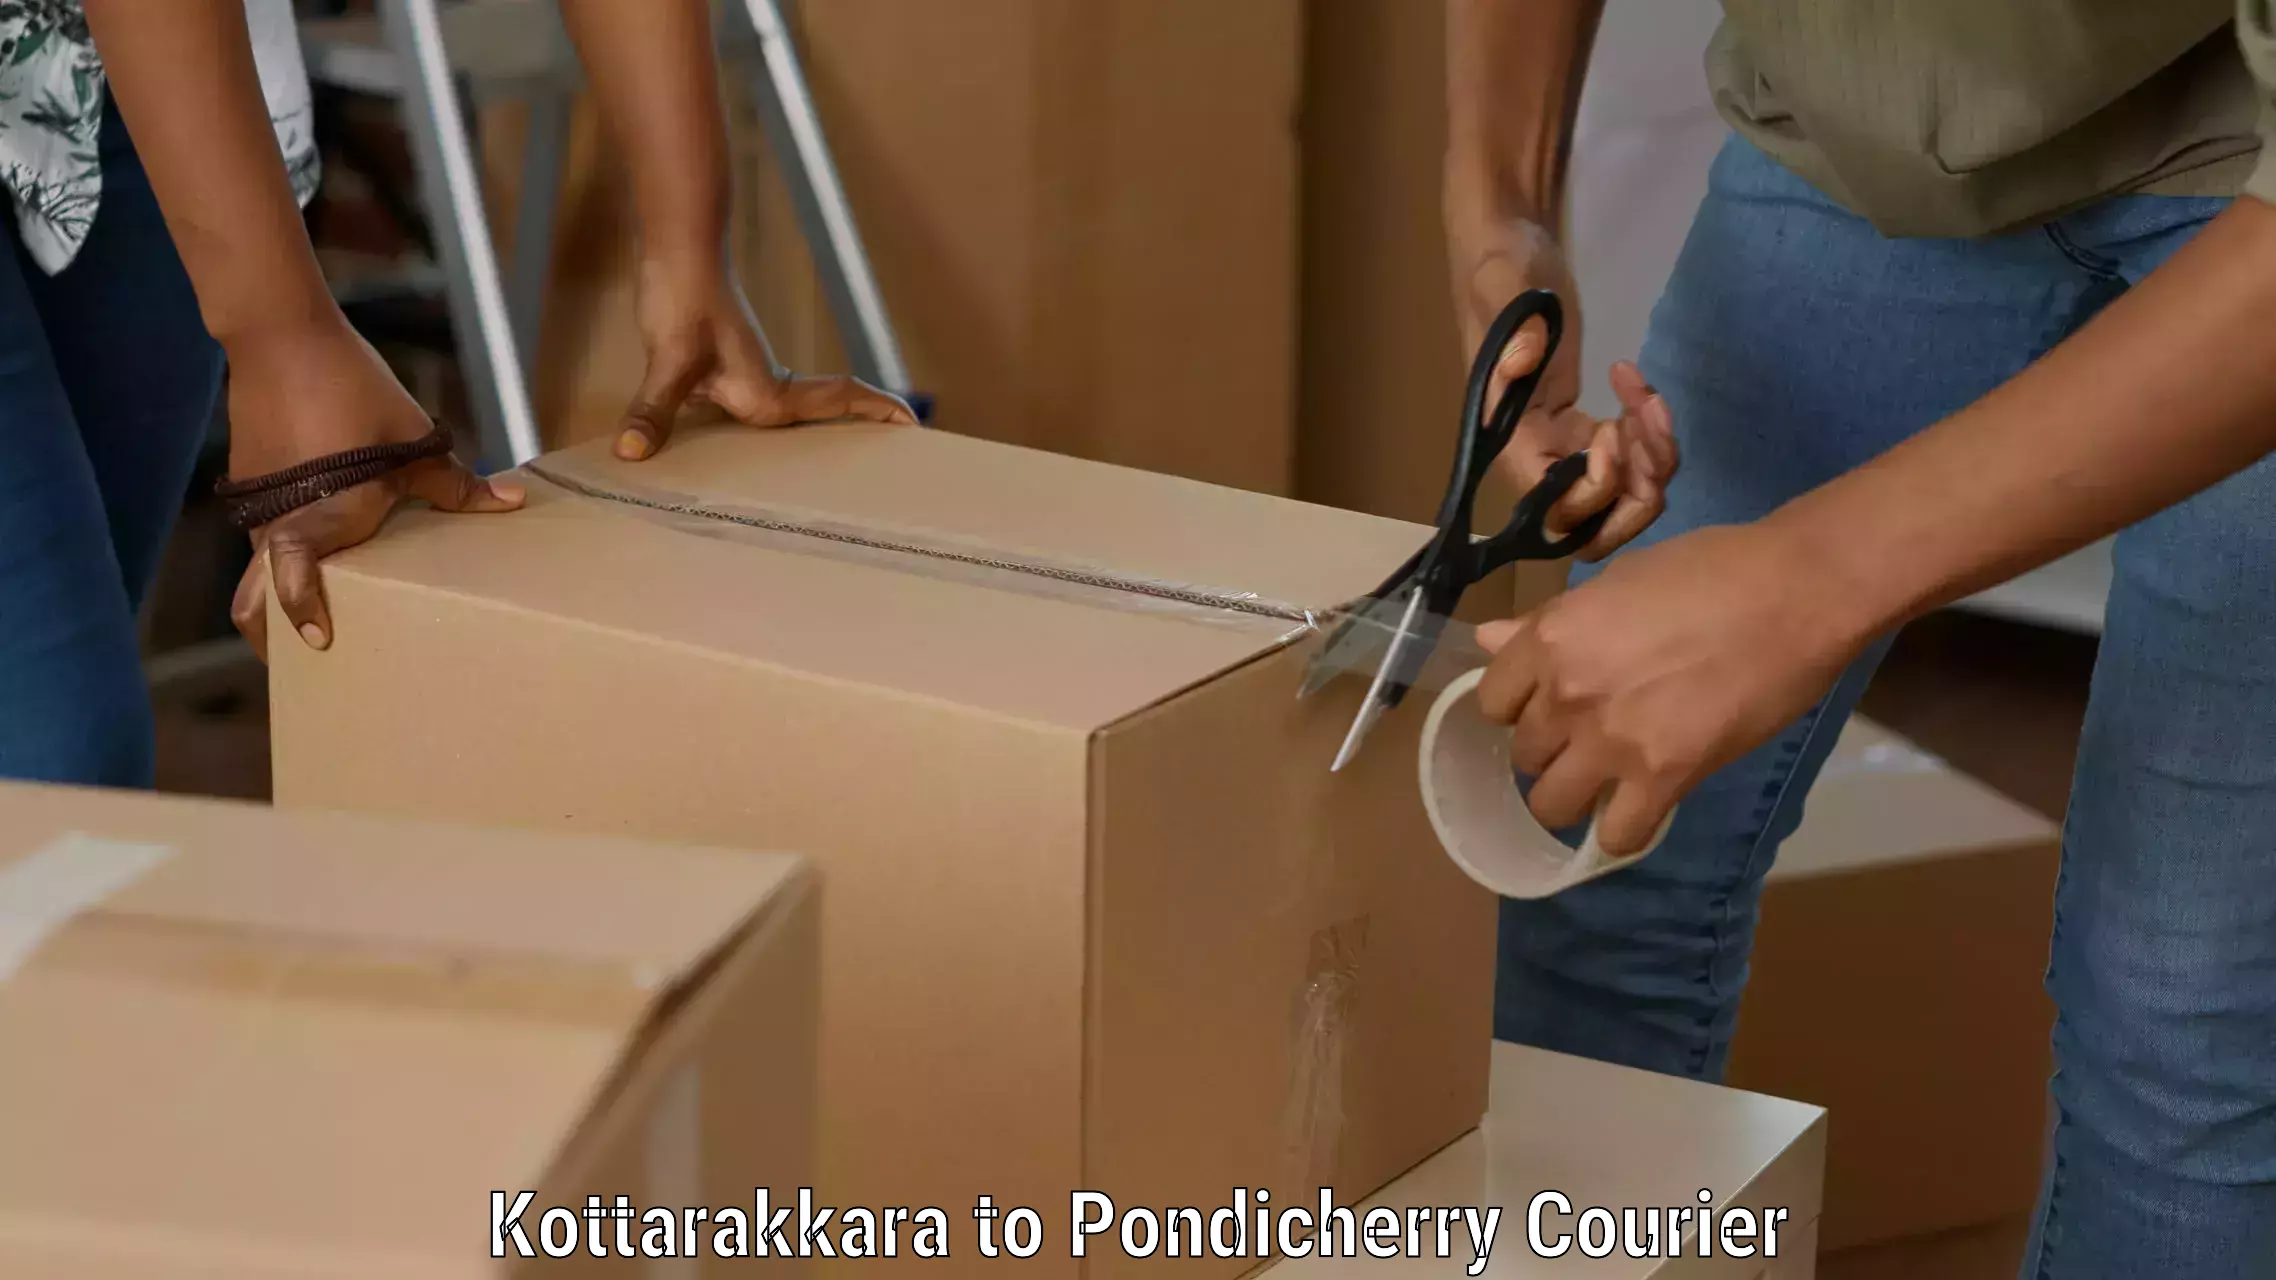 Specialized shipment handling Kottarakkara to Pondicherry